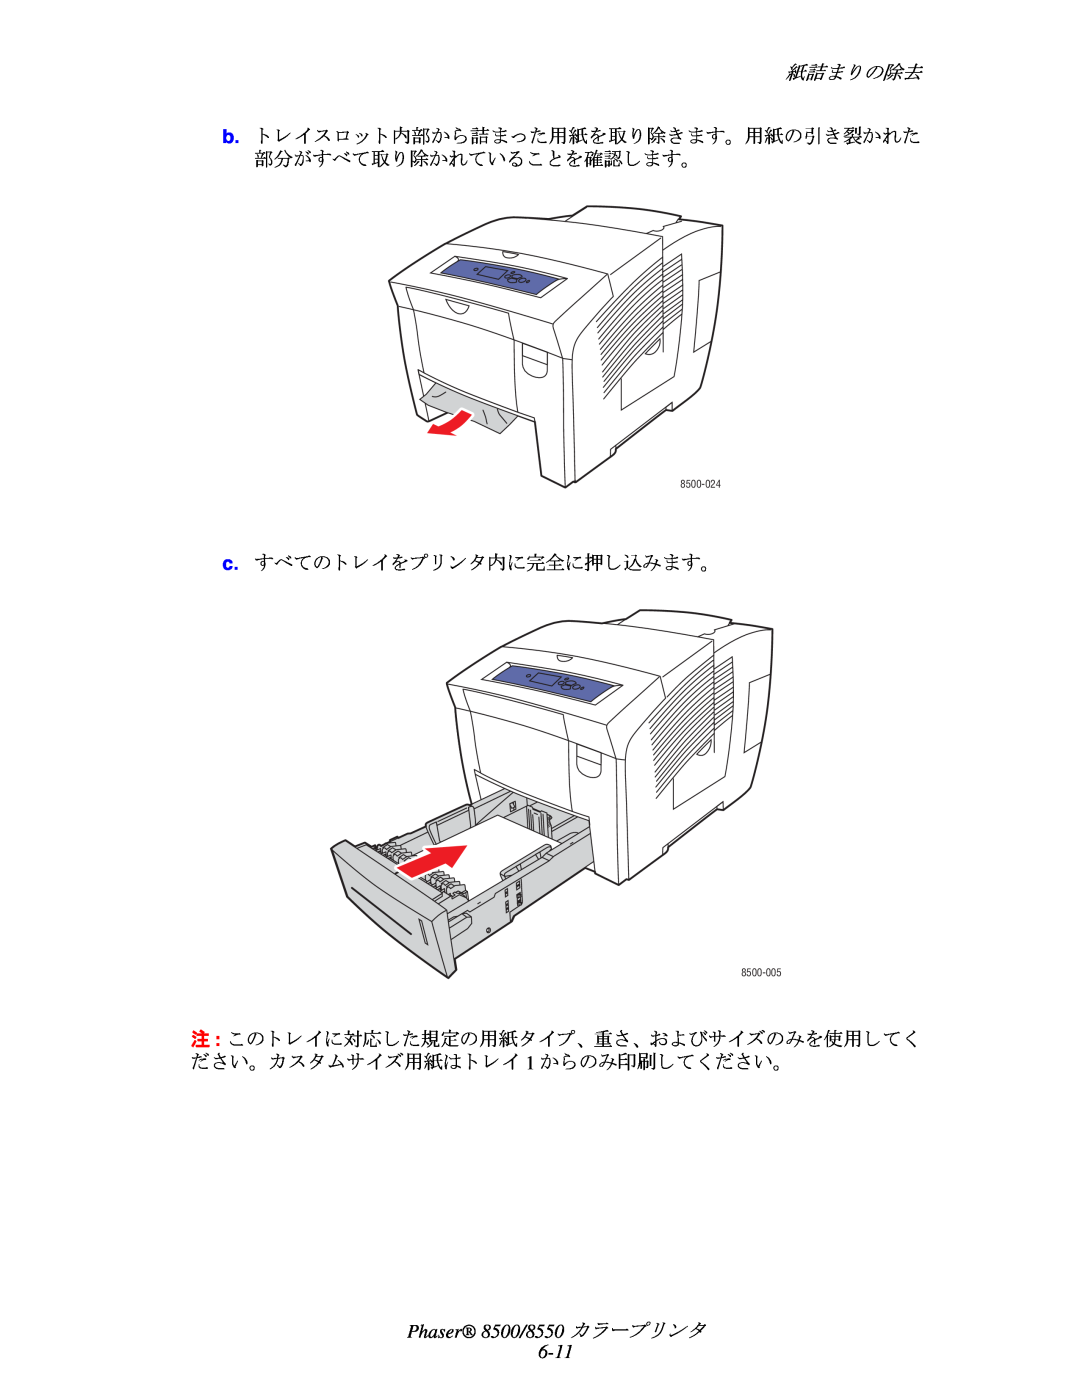 Xerox manual 紙詰ま り の除去, Phaser 8500/8550 カ ラープ リ ン タ 6-11, 8500-024, 8500-005 